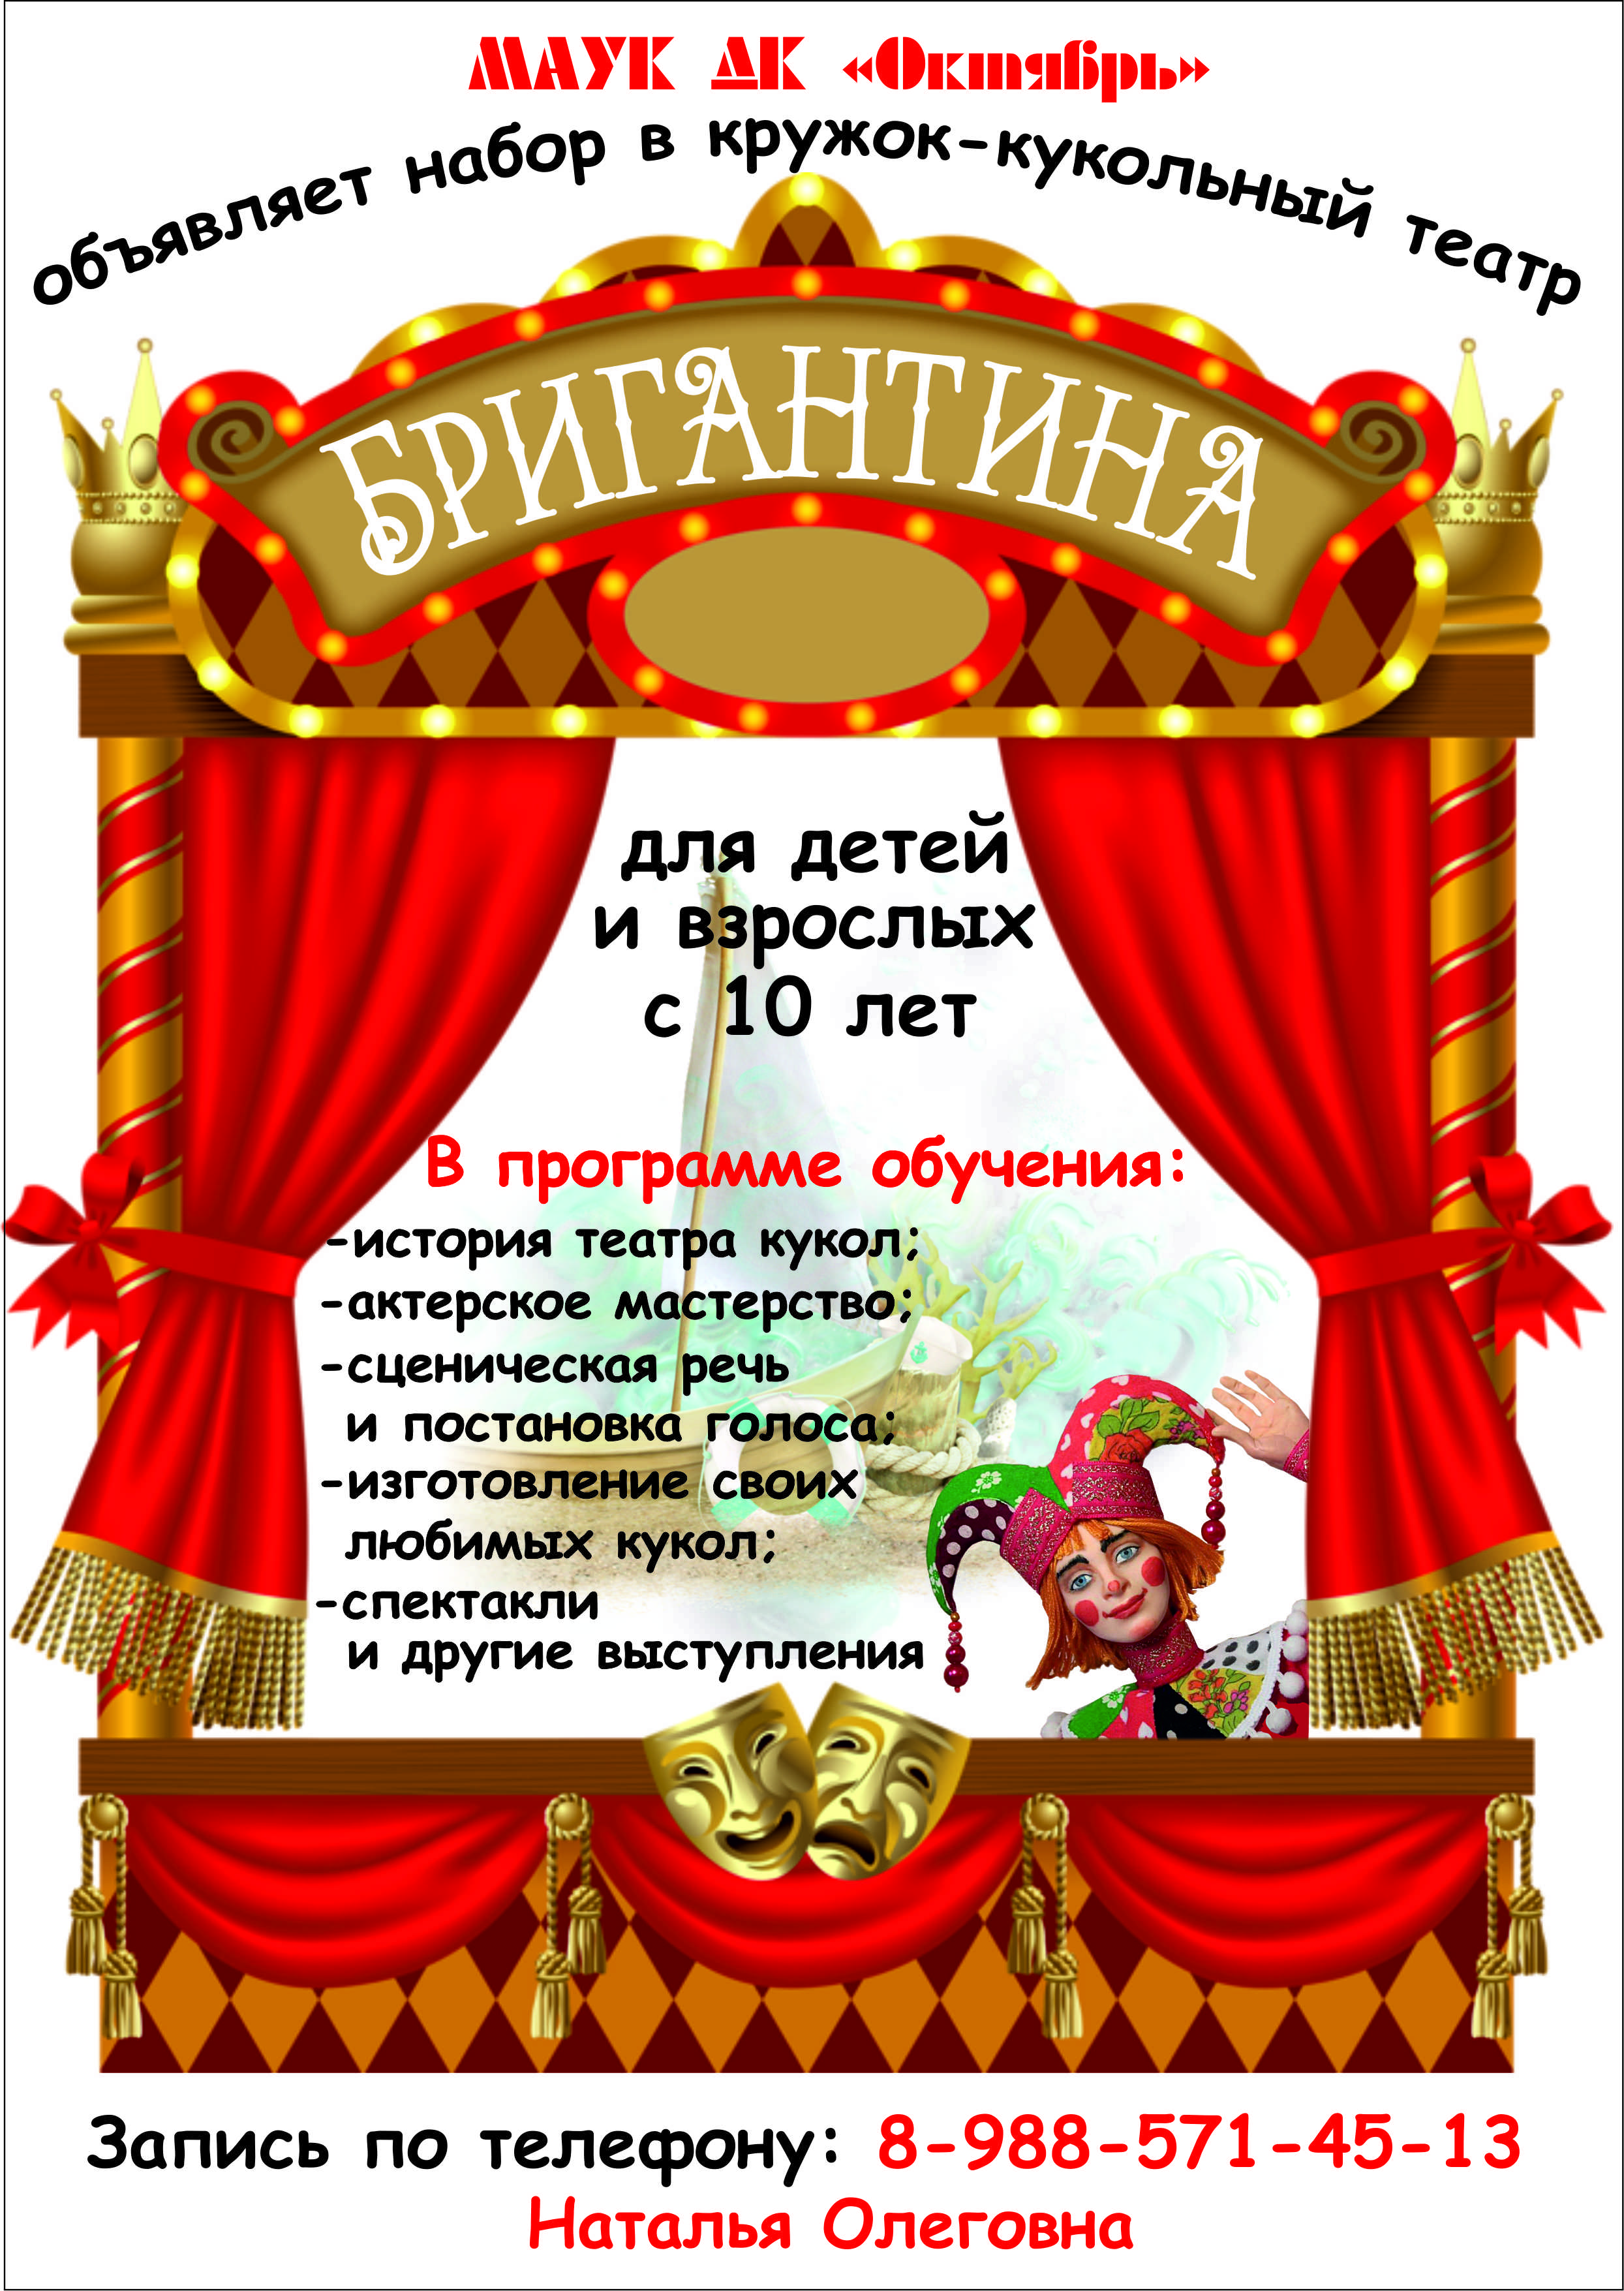 Объявление кружок кукольного театра